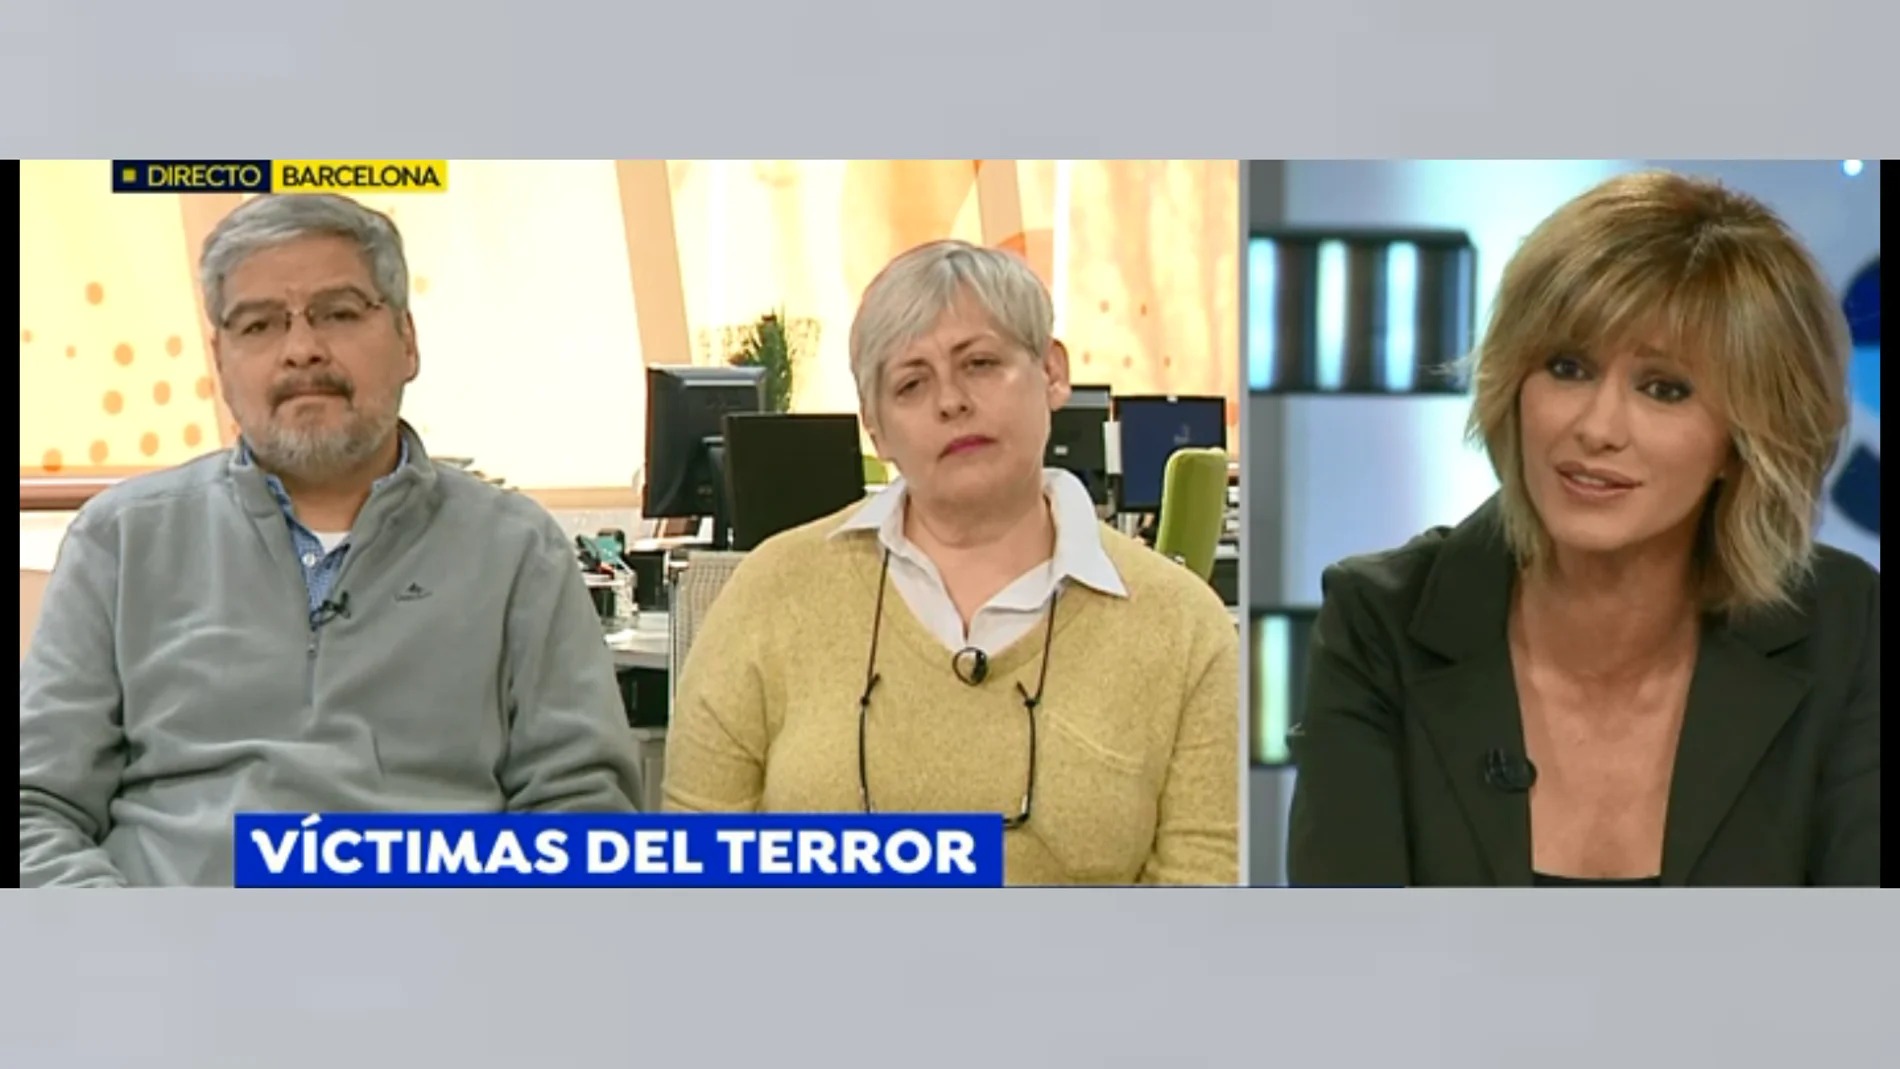 Rubén, víctima del atentado de Cambrils, recuerda el angustioso momento: "Un terrorista me apuñaló en la cara, mi reacción fue quitarme el cuchillo y empecé a sangrar”  